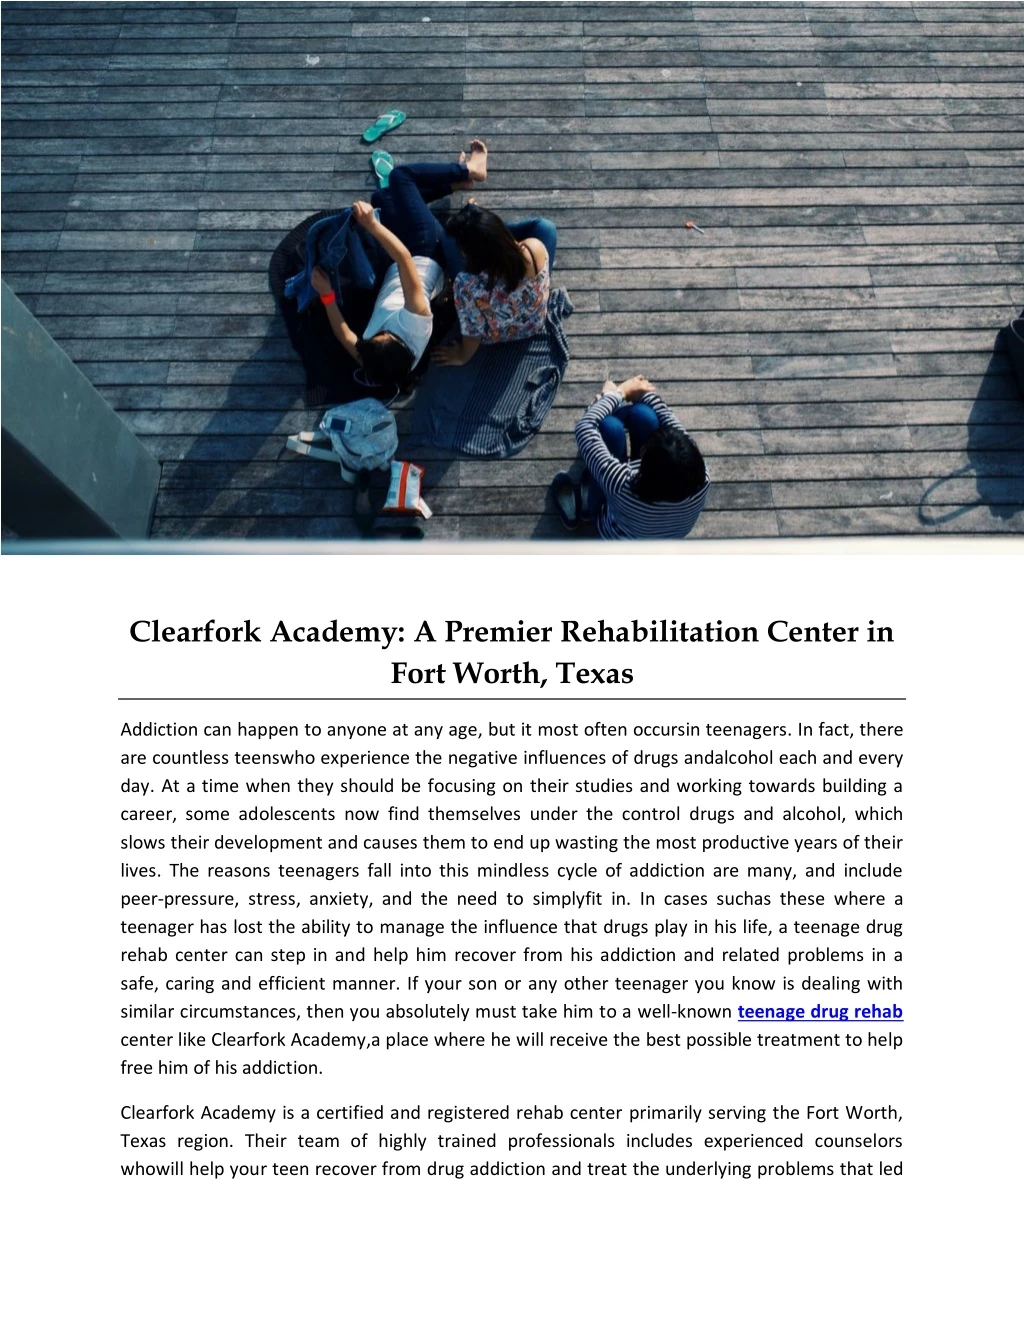 clearfork academy a premier rehabilitation center